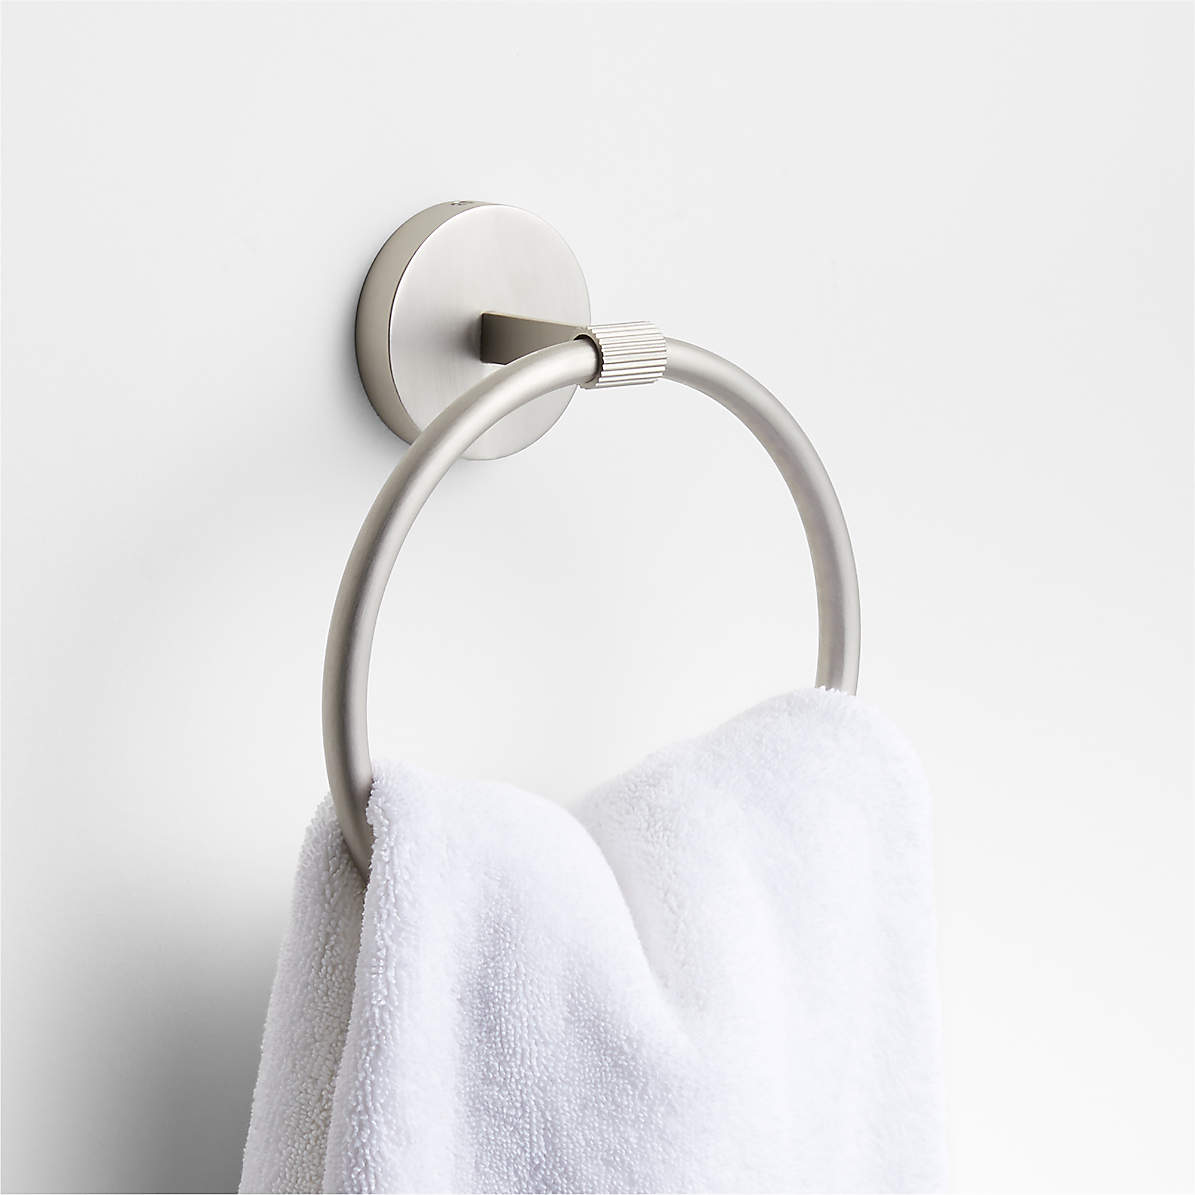 Basics Modern Towel Bathroom Bar, Satin Nickel, 24 Inch, Towel Bars  -  Canada